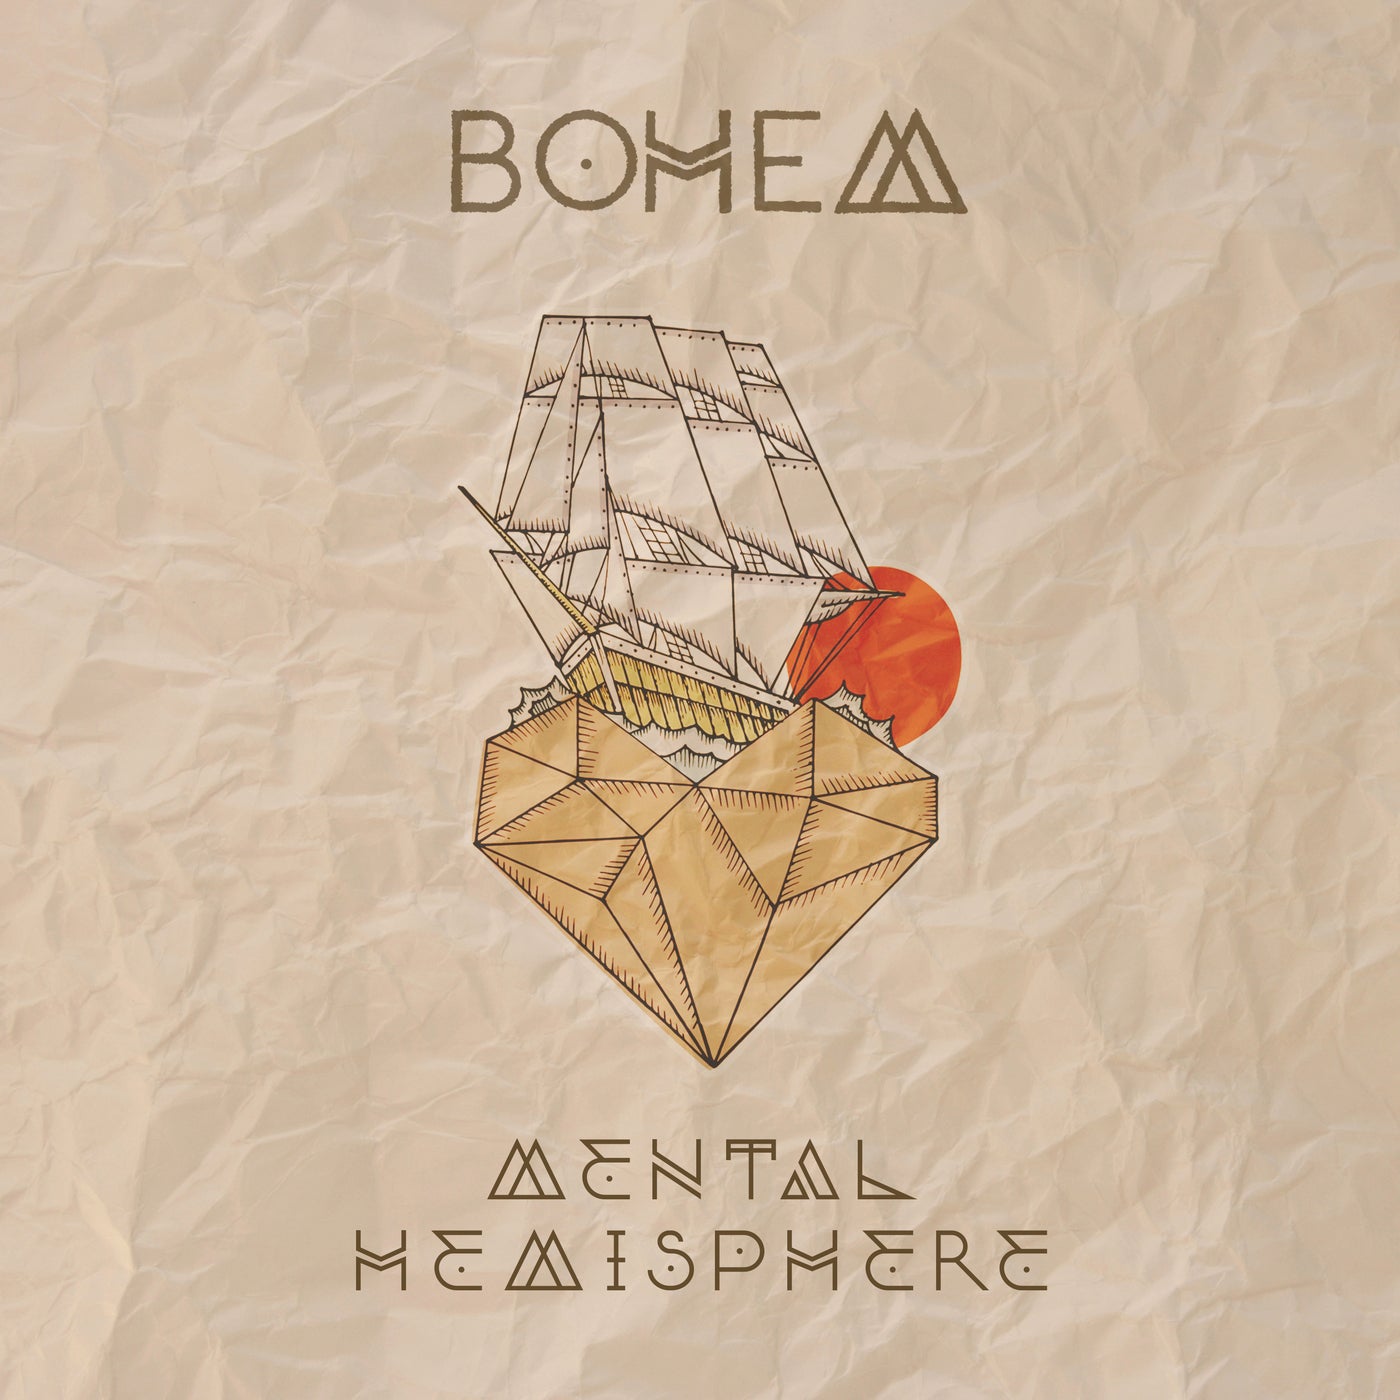 Bohem music download - Beatport